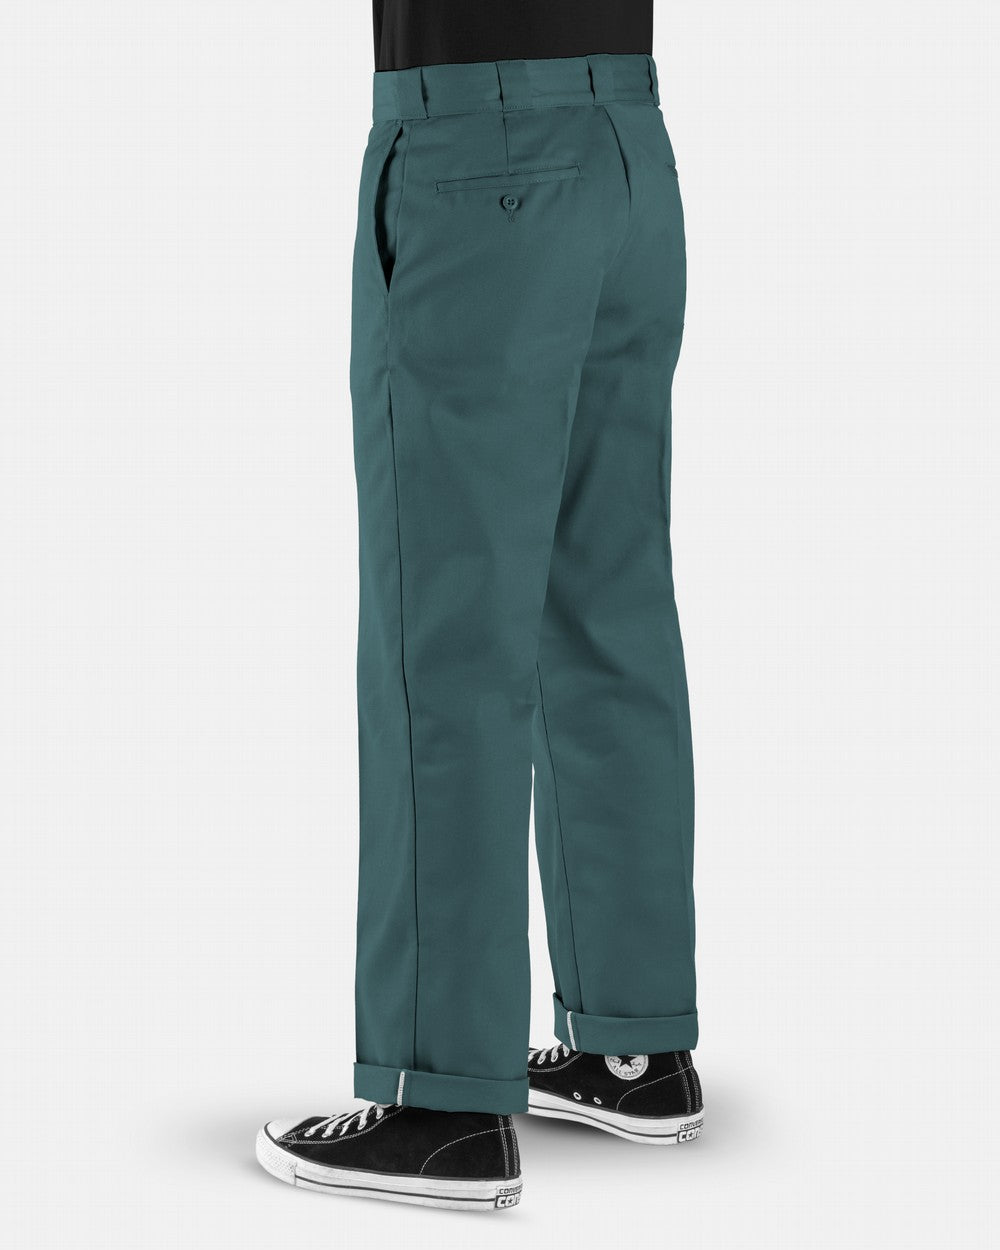 DICKIES Original 874 Pants Lincoln Green - Freeride Boardshop